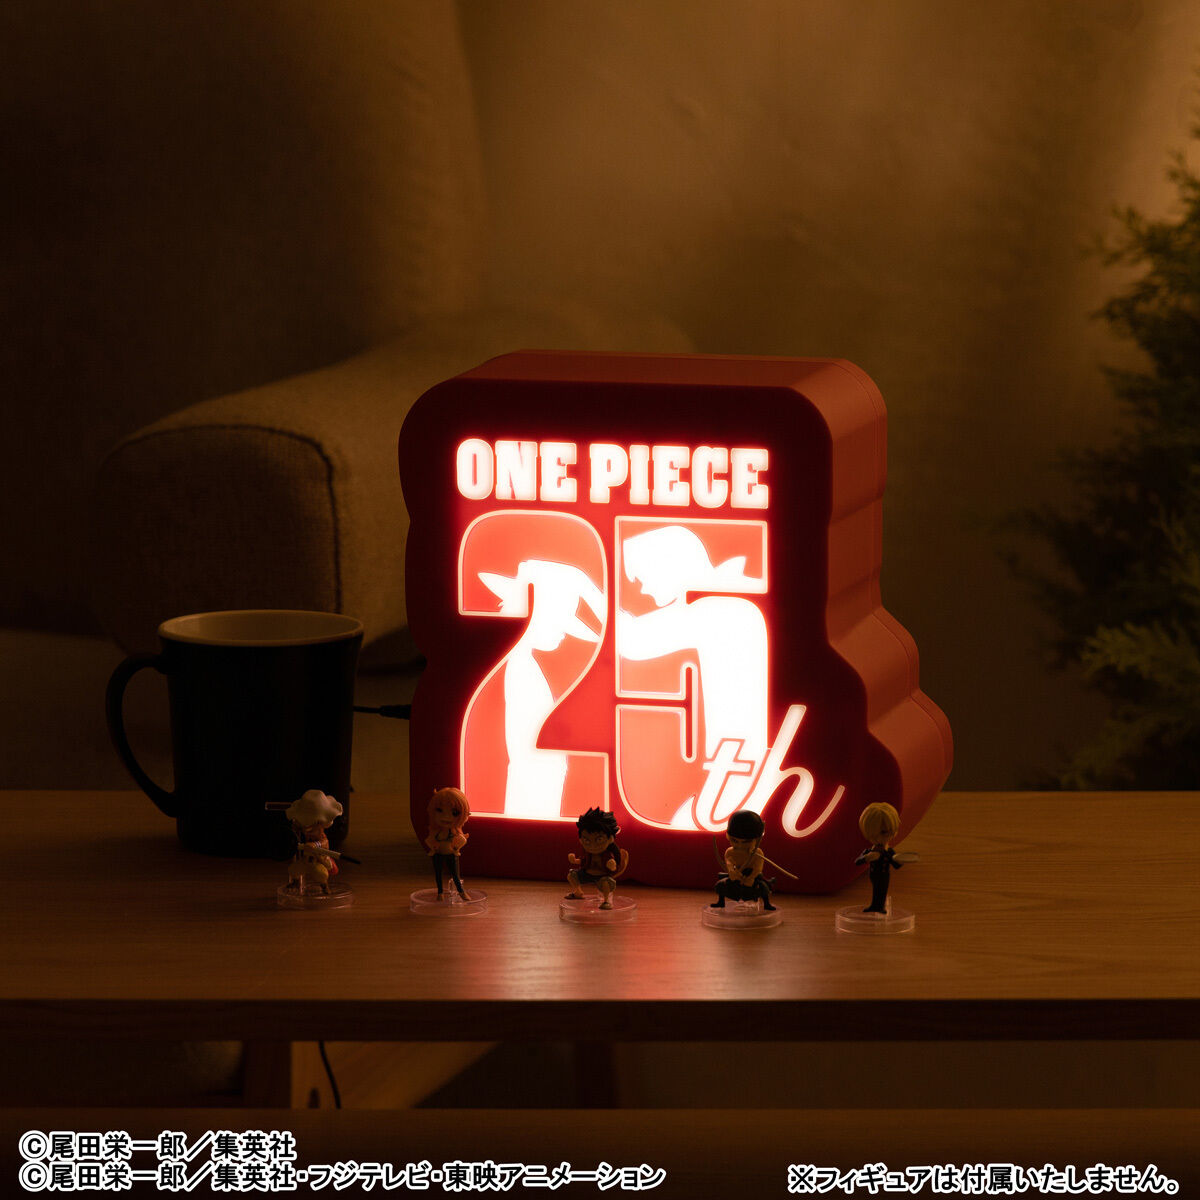 原作「ONE PIECE」25周年ロゴライトスタンド-RED- | ONE PIECE